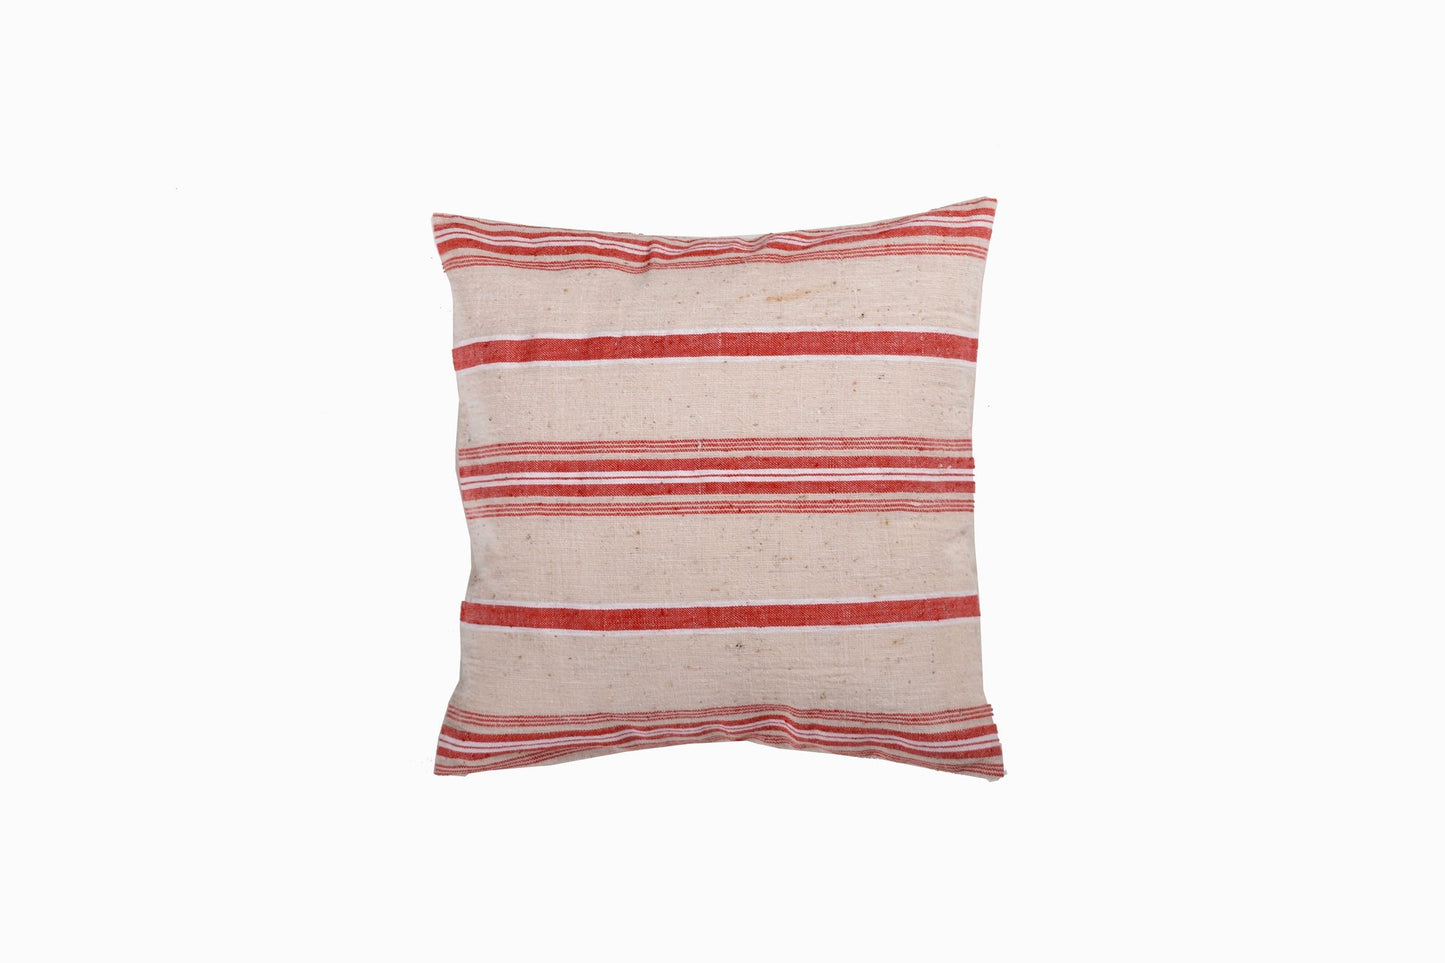 Turkish linen small coral/cream square cushion